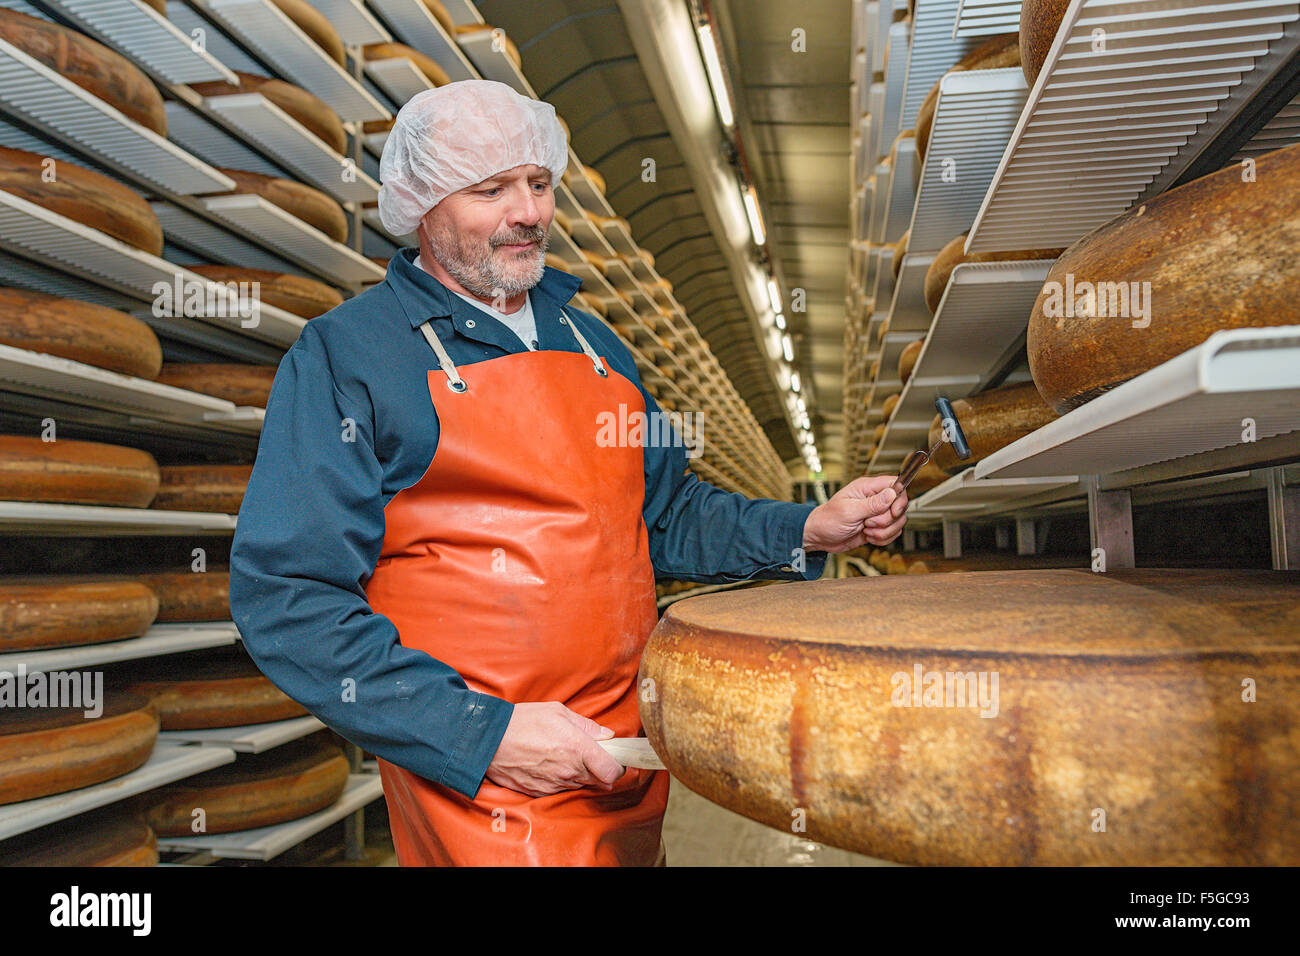 Roues de fromage maturation échantillonné à Kaltbach grottes, l'un des plus grands dépôts de fromage en Suisse. Banque D'Images